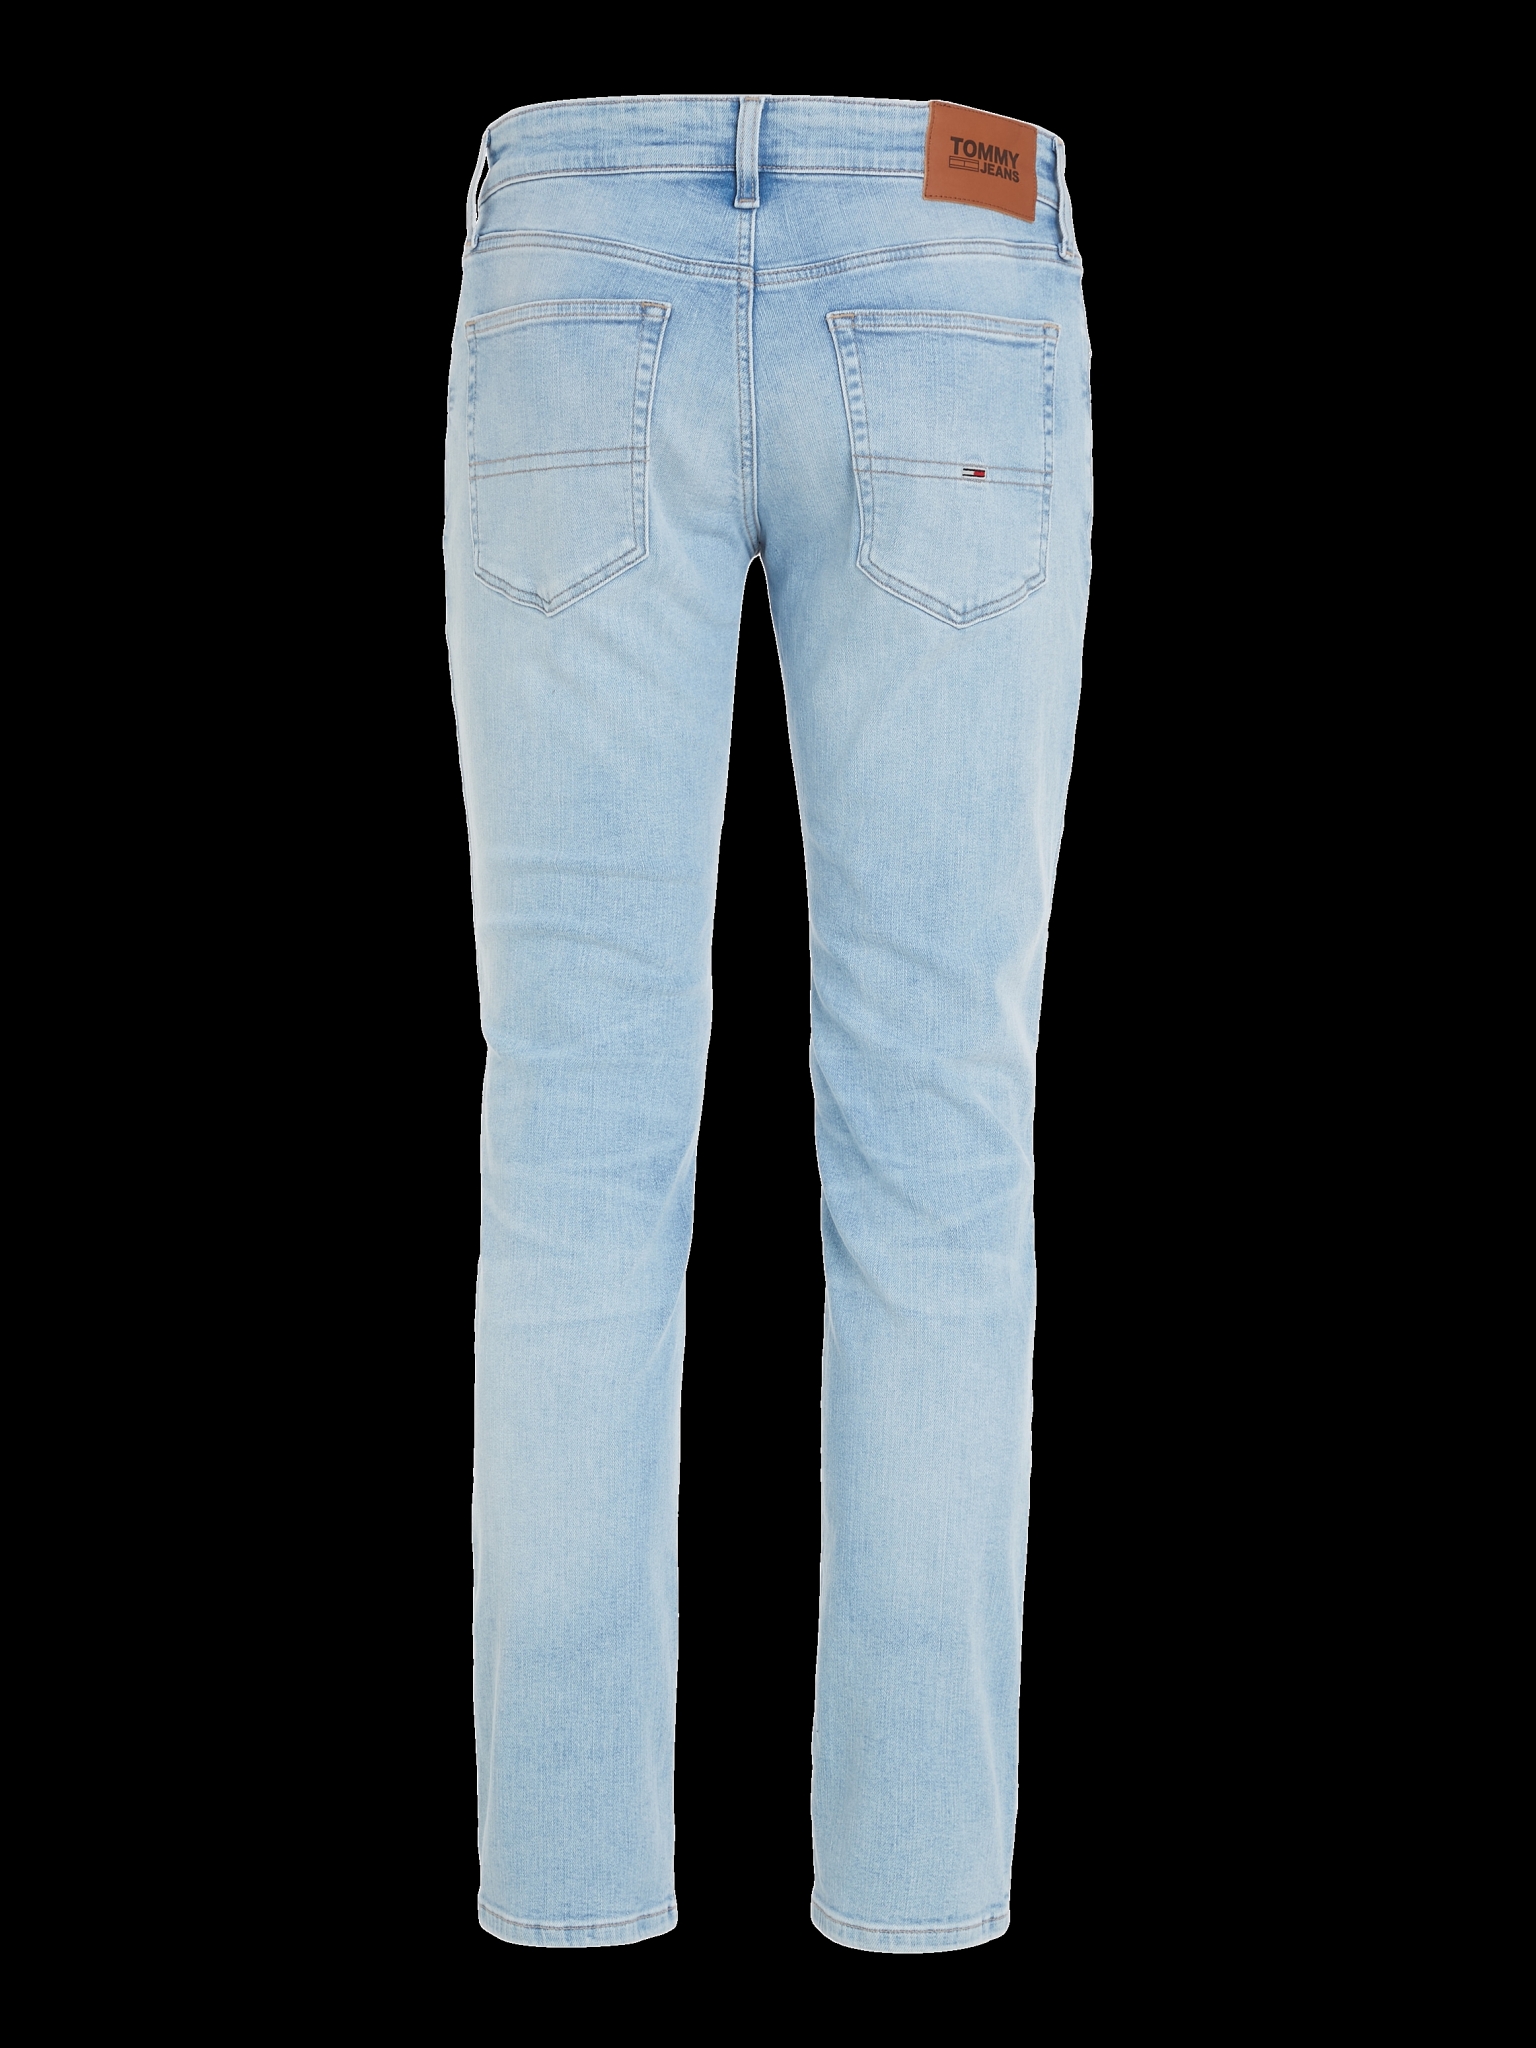 TOMMY JEANS Scanton Slim Jeans mit Fade-Effekt 10682525